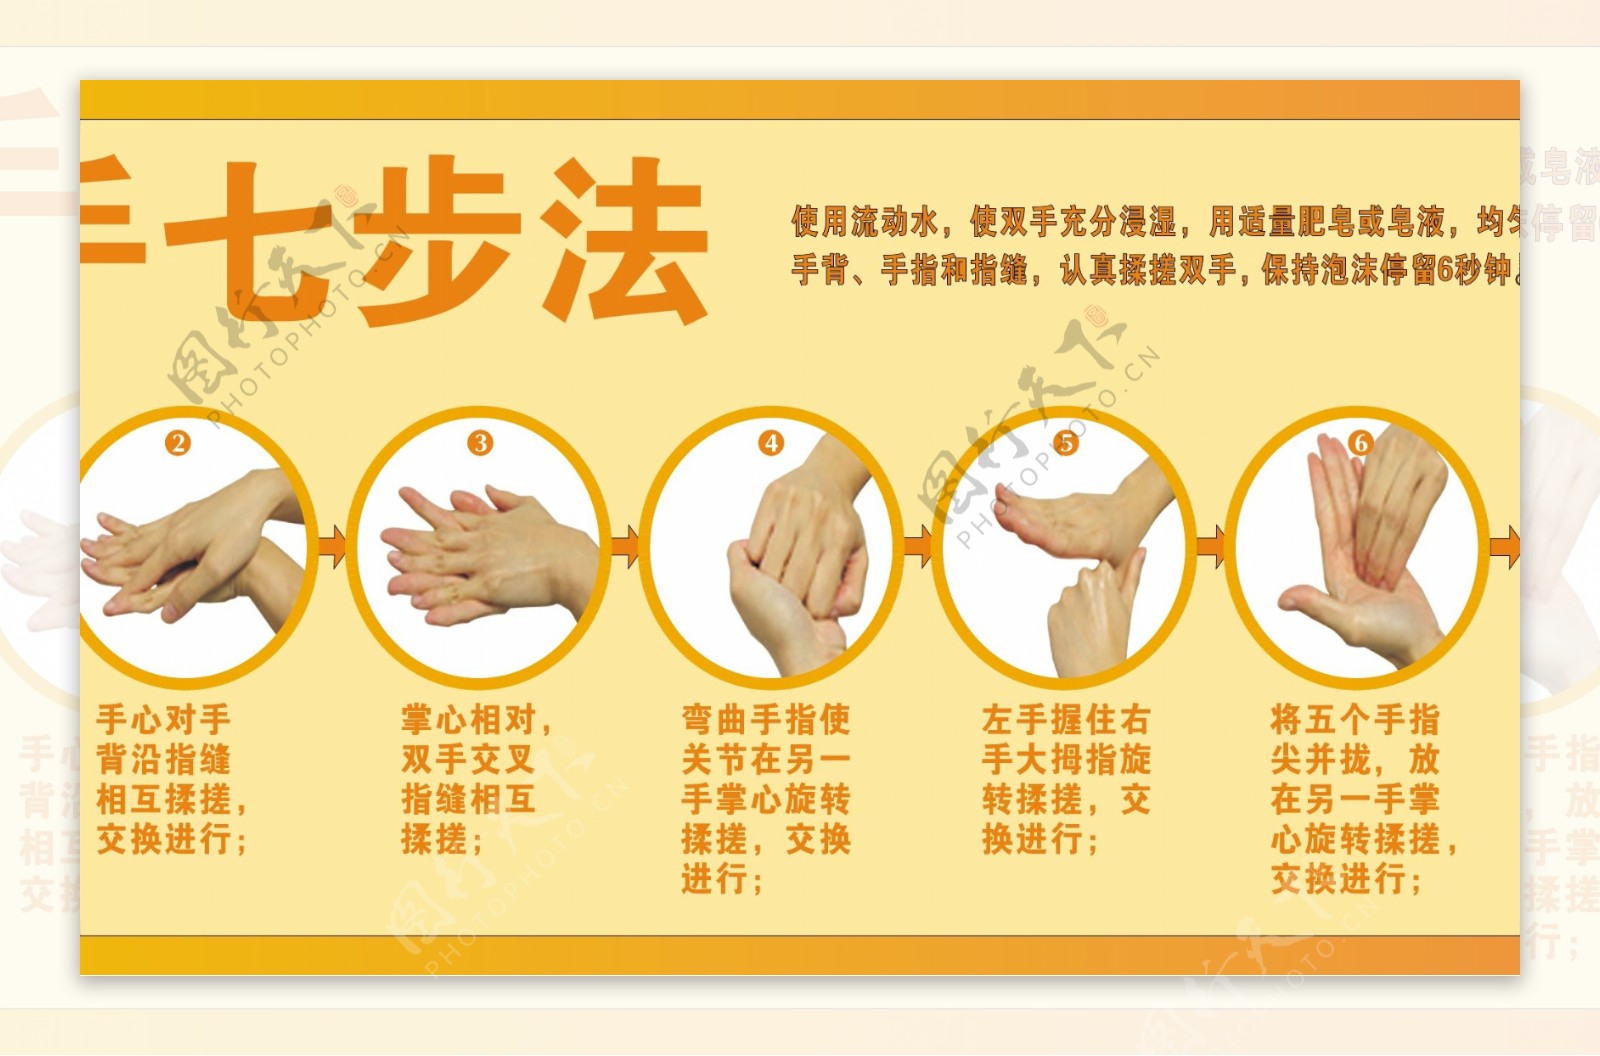 洗手七步法解说图片